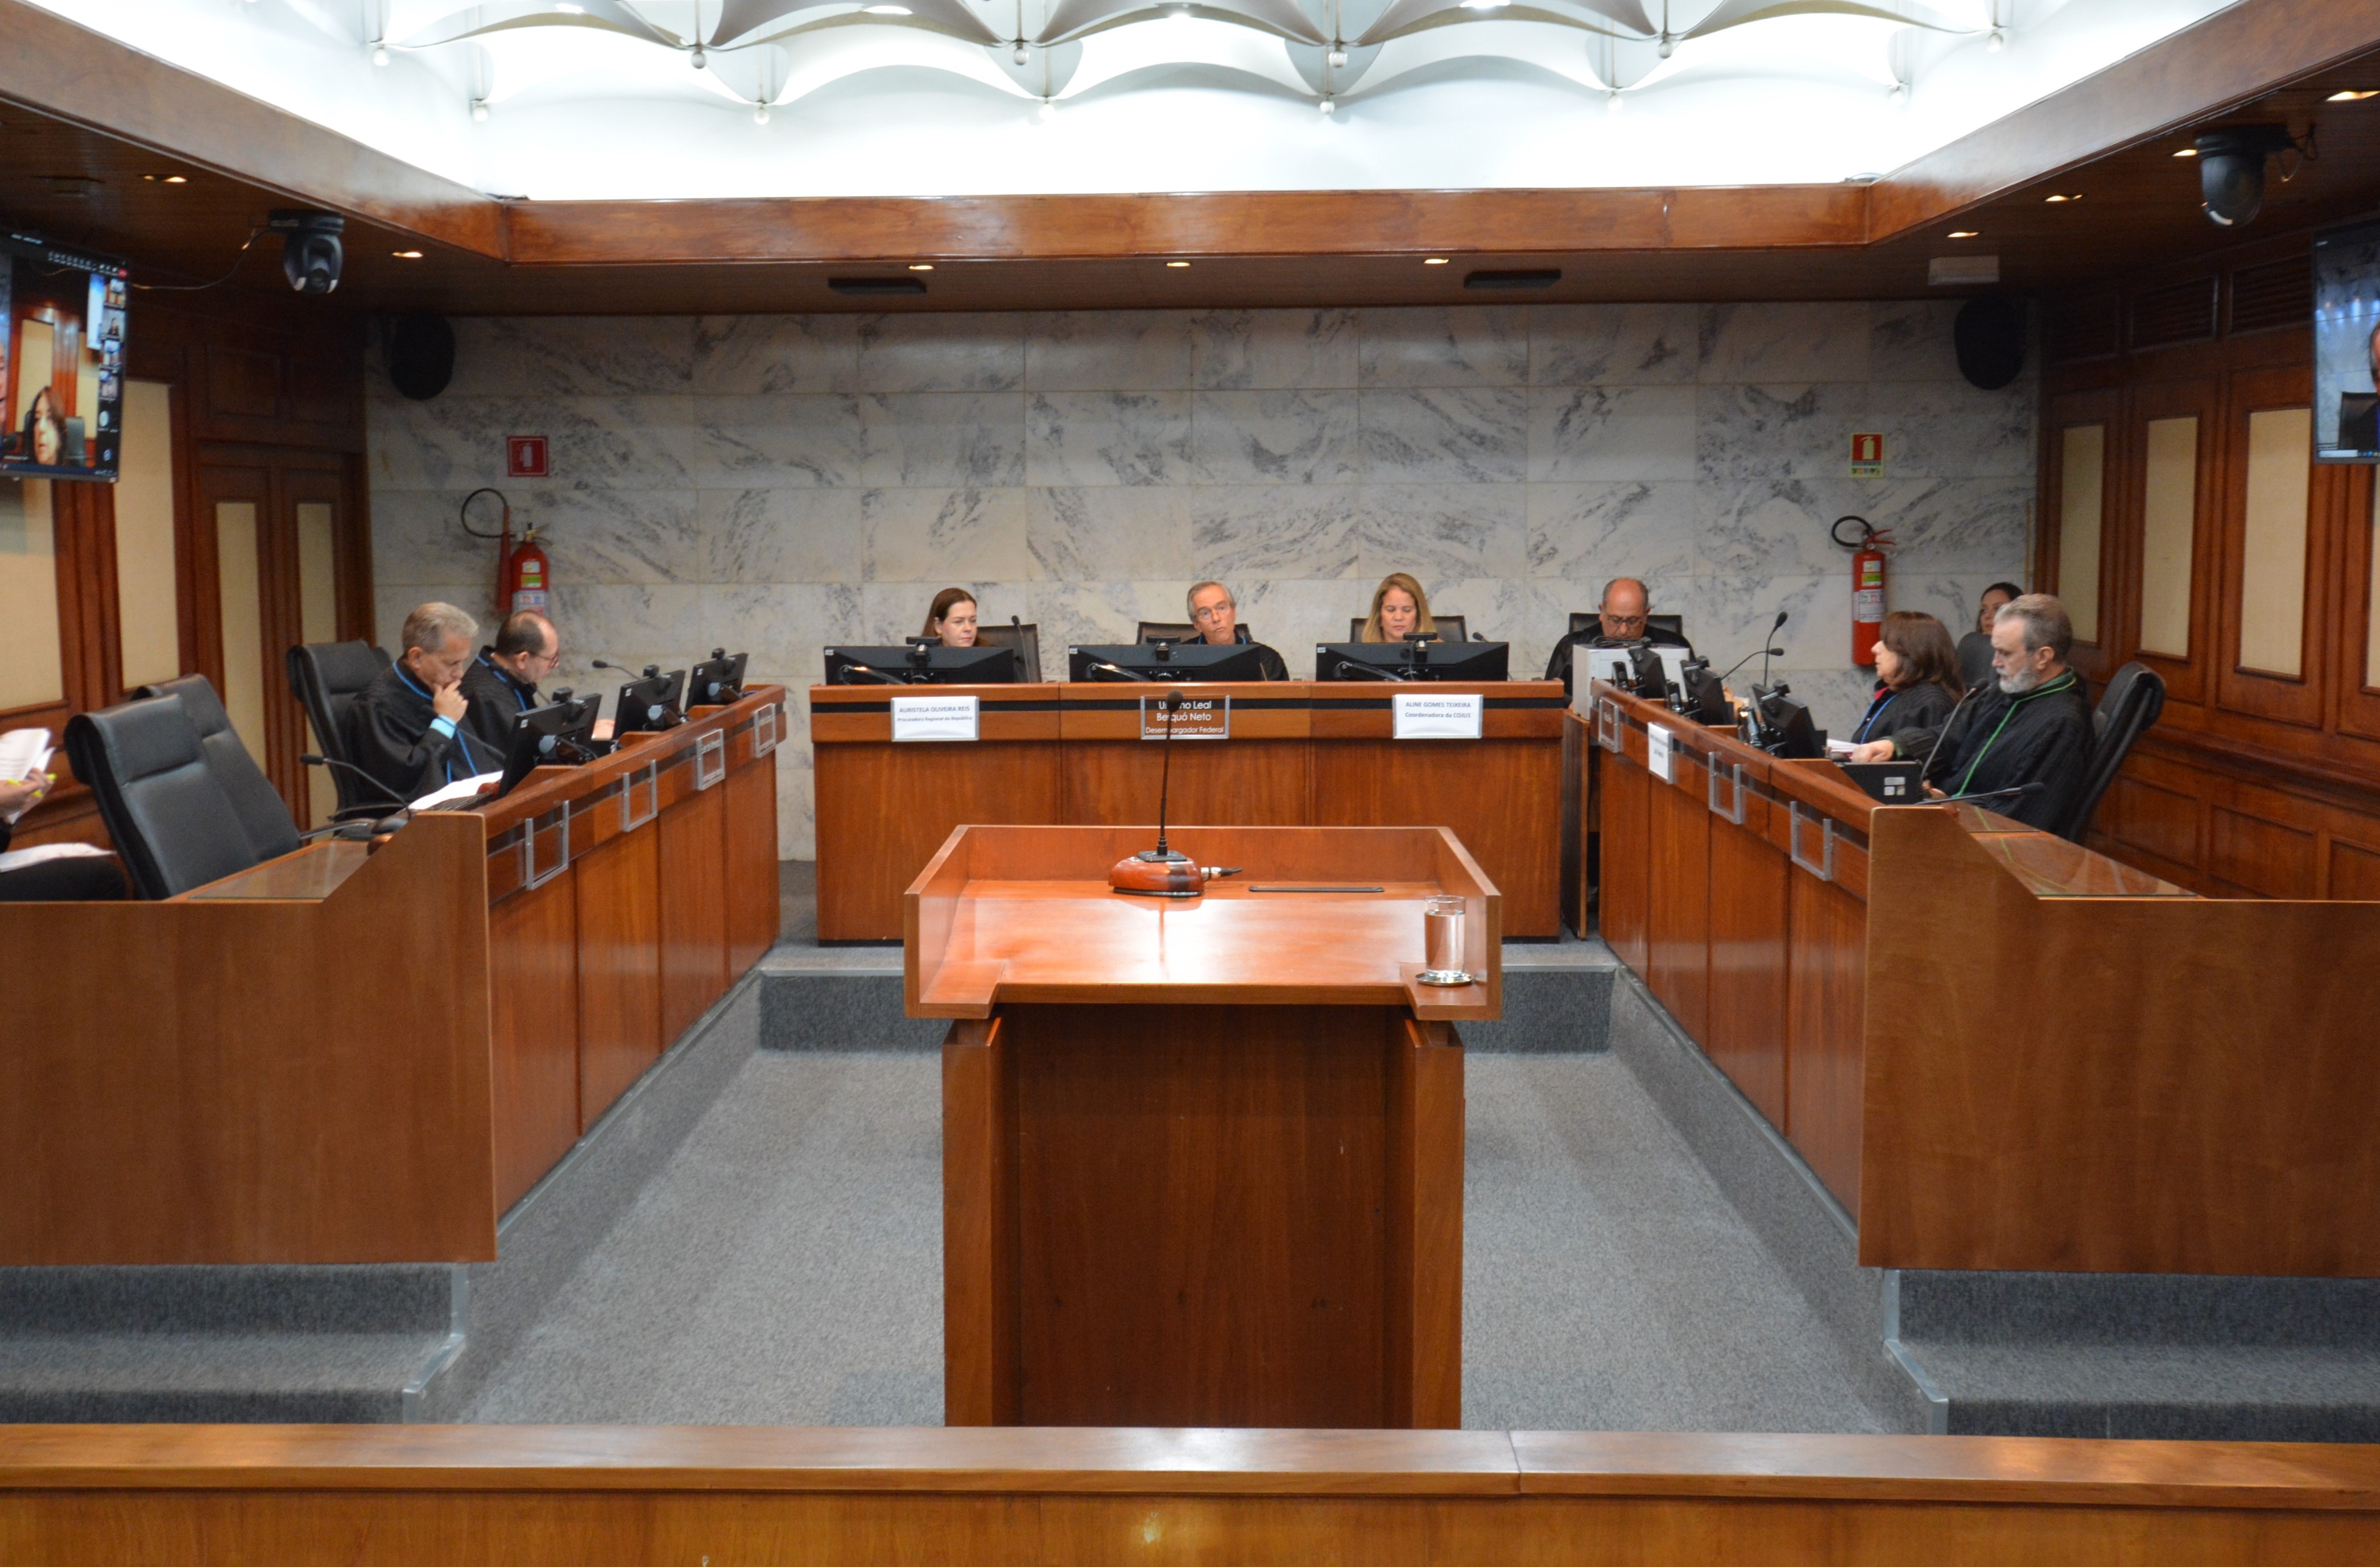 INSTITUCIONAL: 9ª Turma do TRF 1ª Região realiza primeira sessão ordinária de julgamento